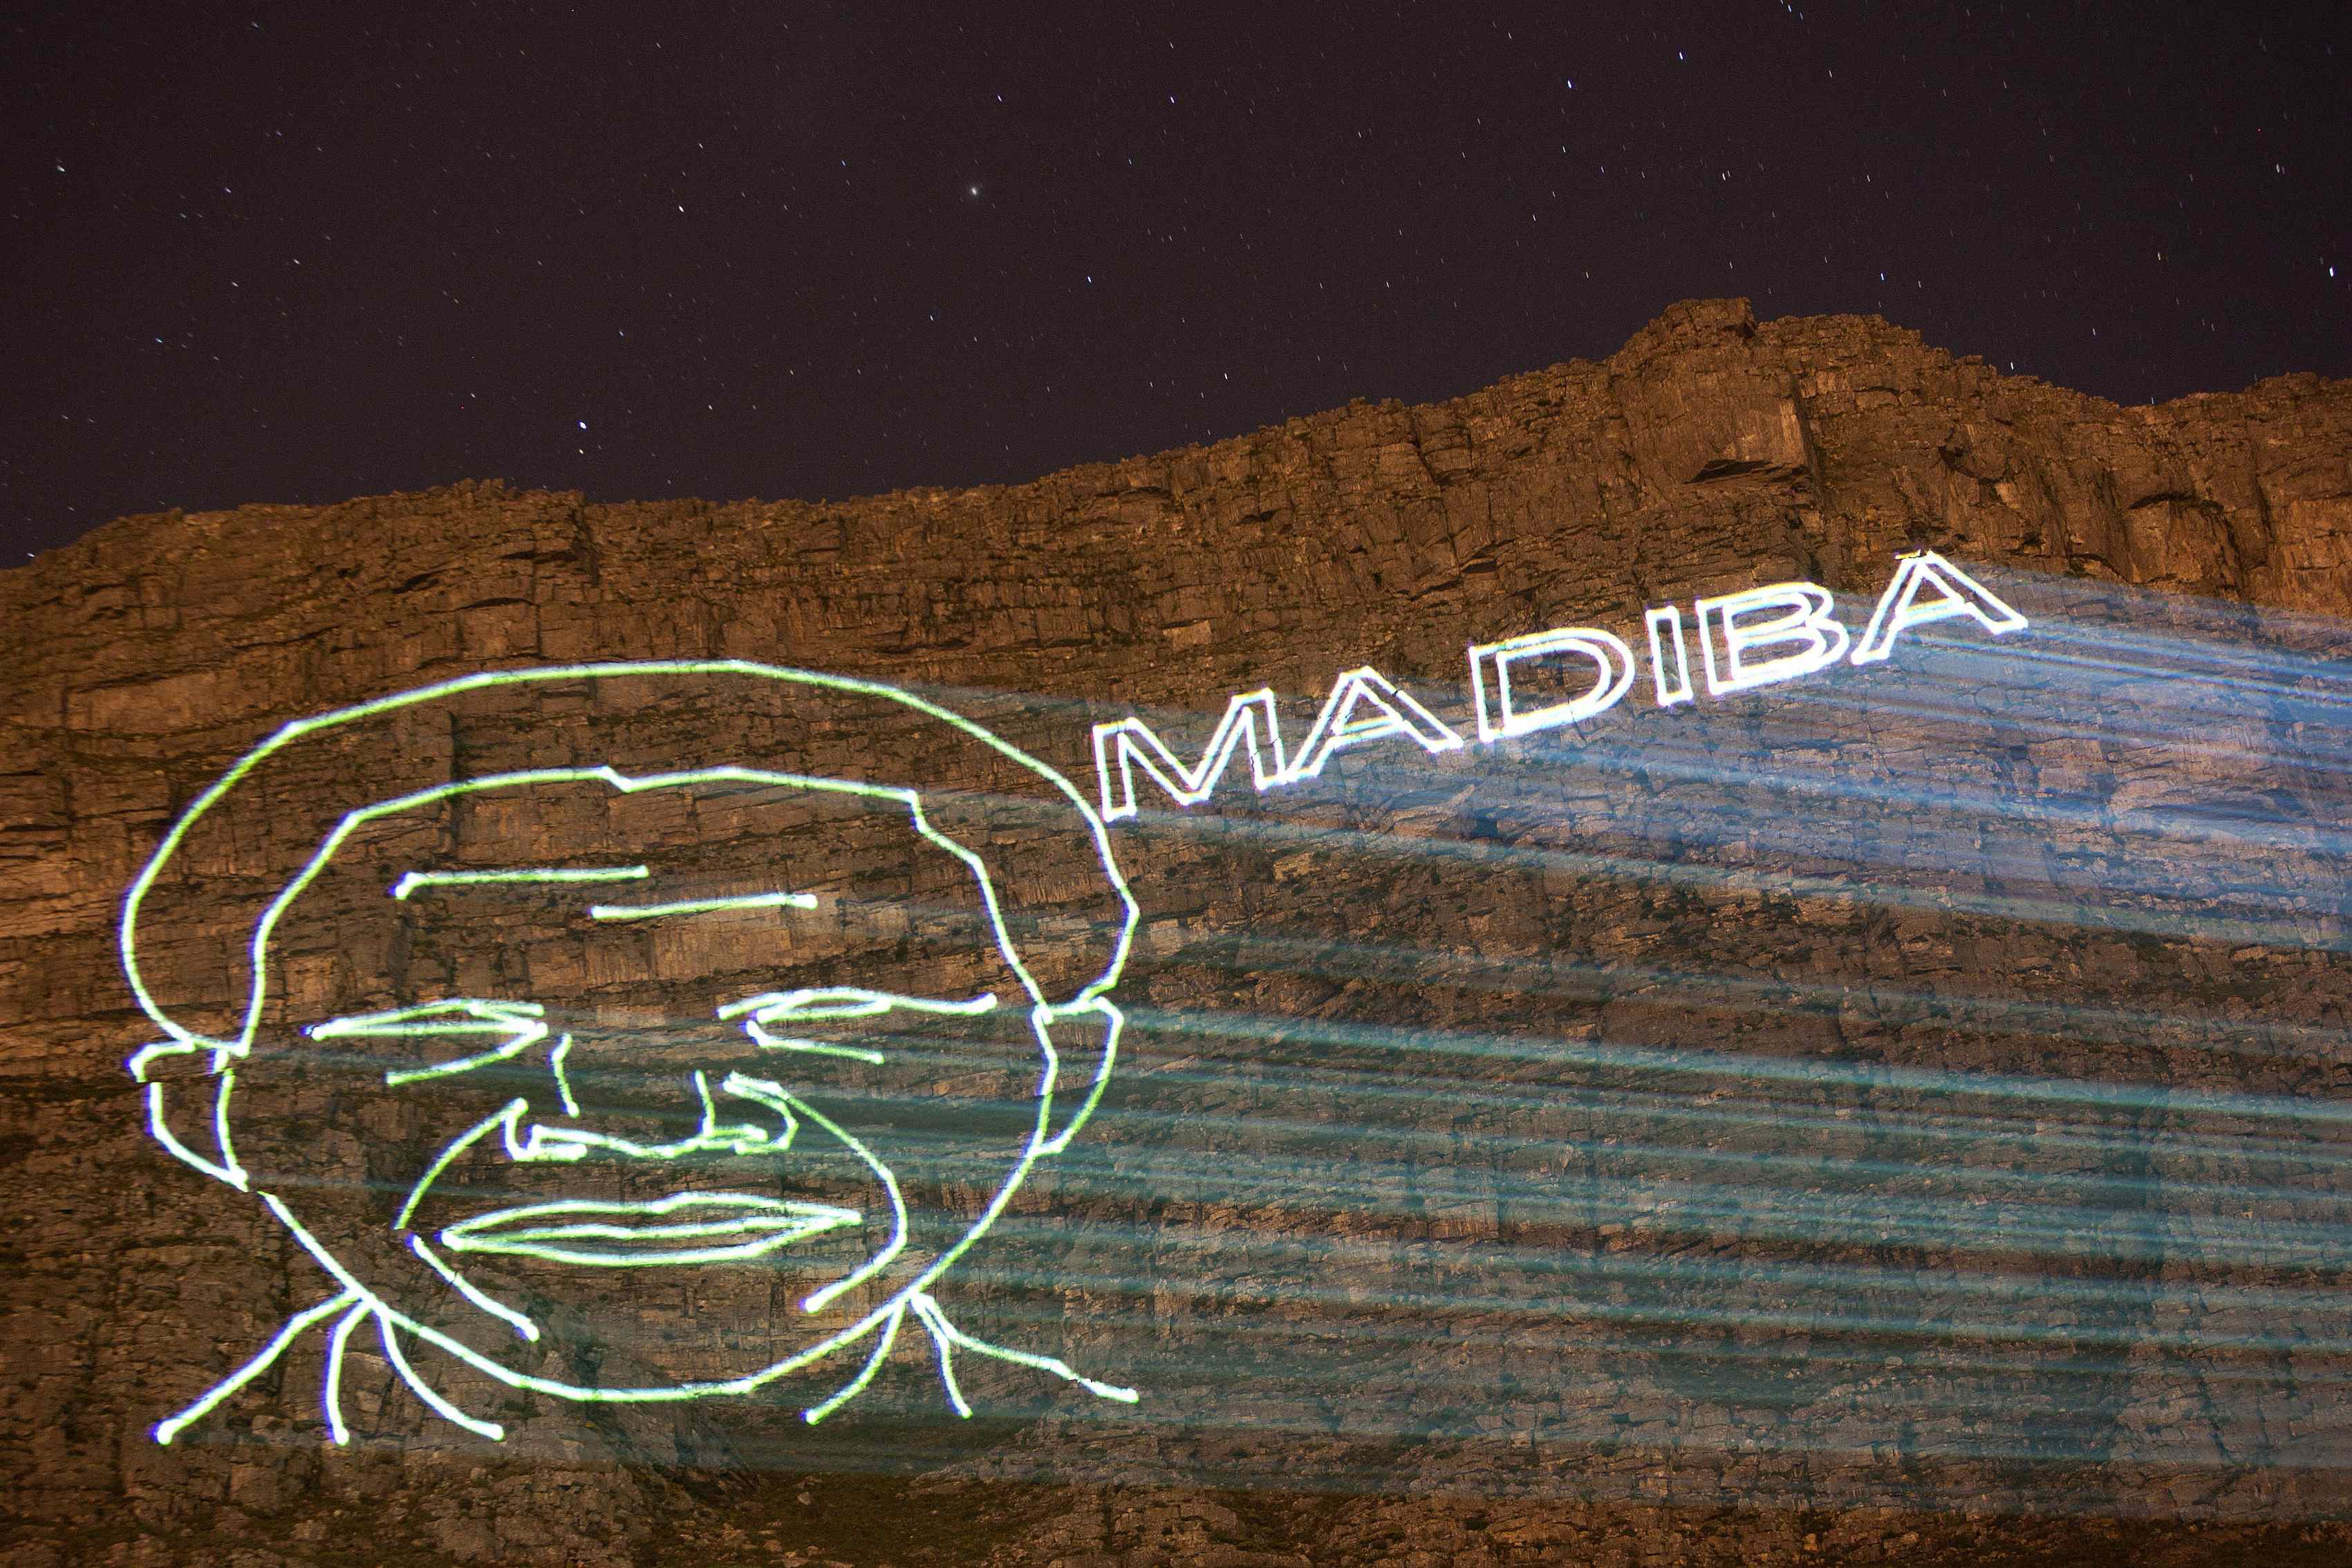 Από τον Ομπάμα μέχρι τον Κάστρο, όλοι στη Νότια Αφρική για τον Νέλσον Μαντέλα